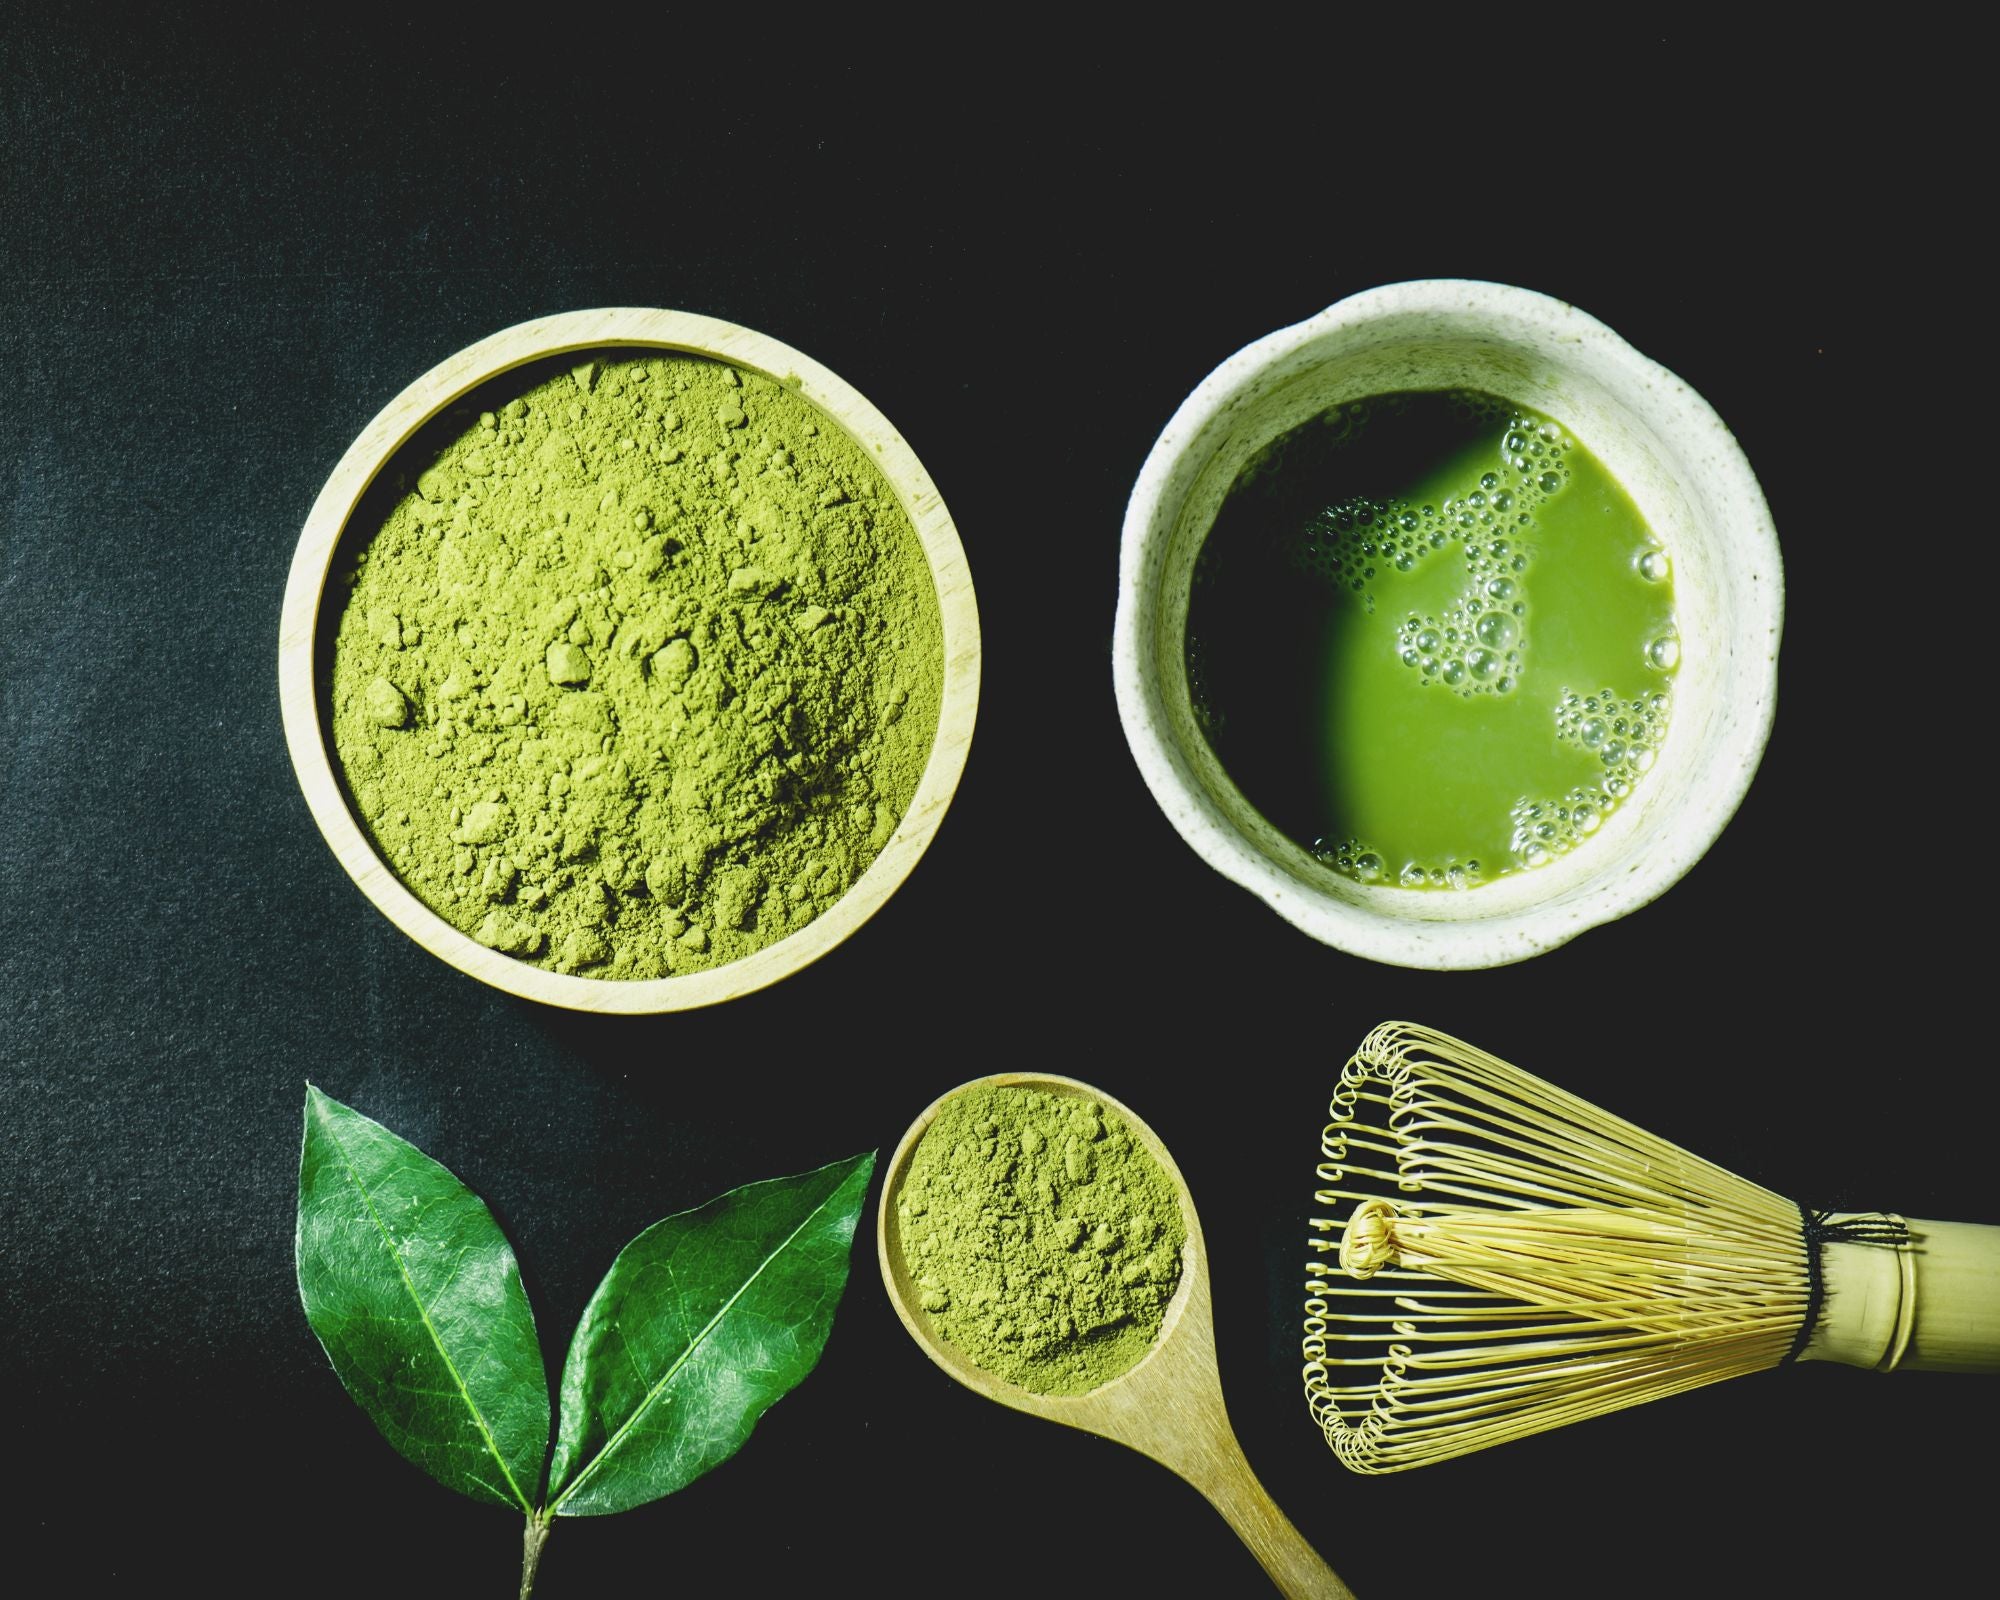 Beneficios del té matcha: ¿para qué sirve? - Salud y Bienestar Natural